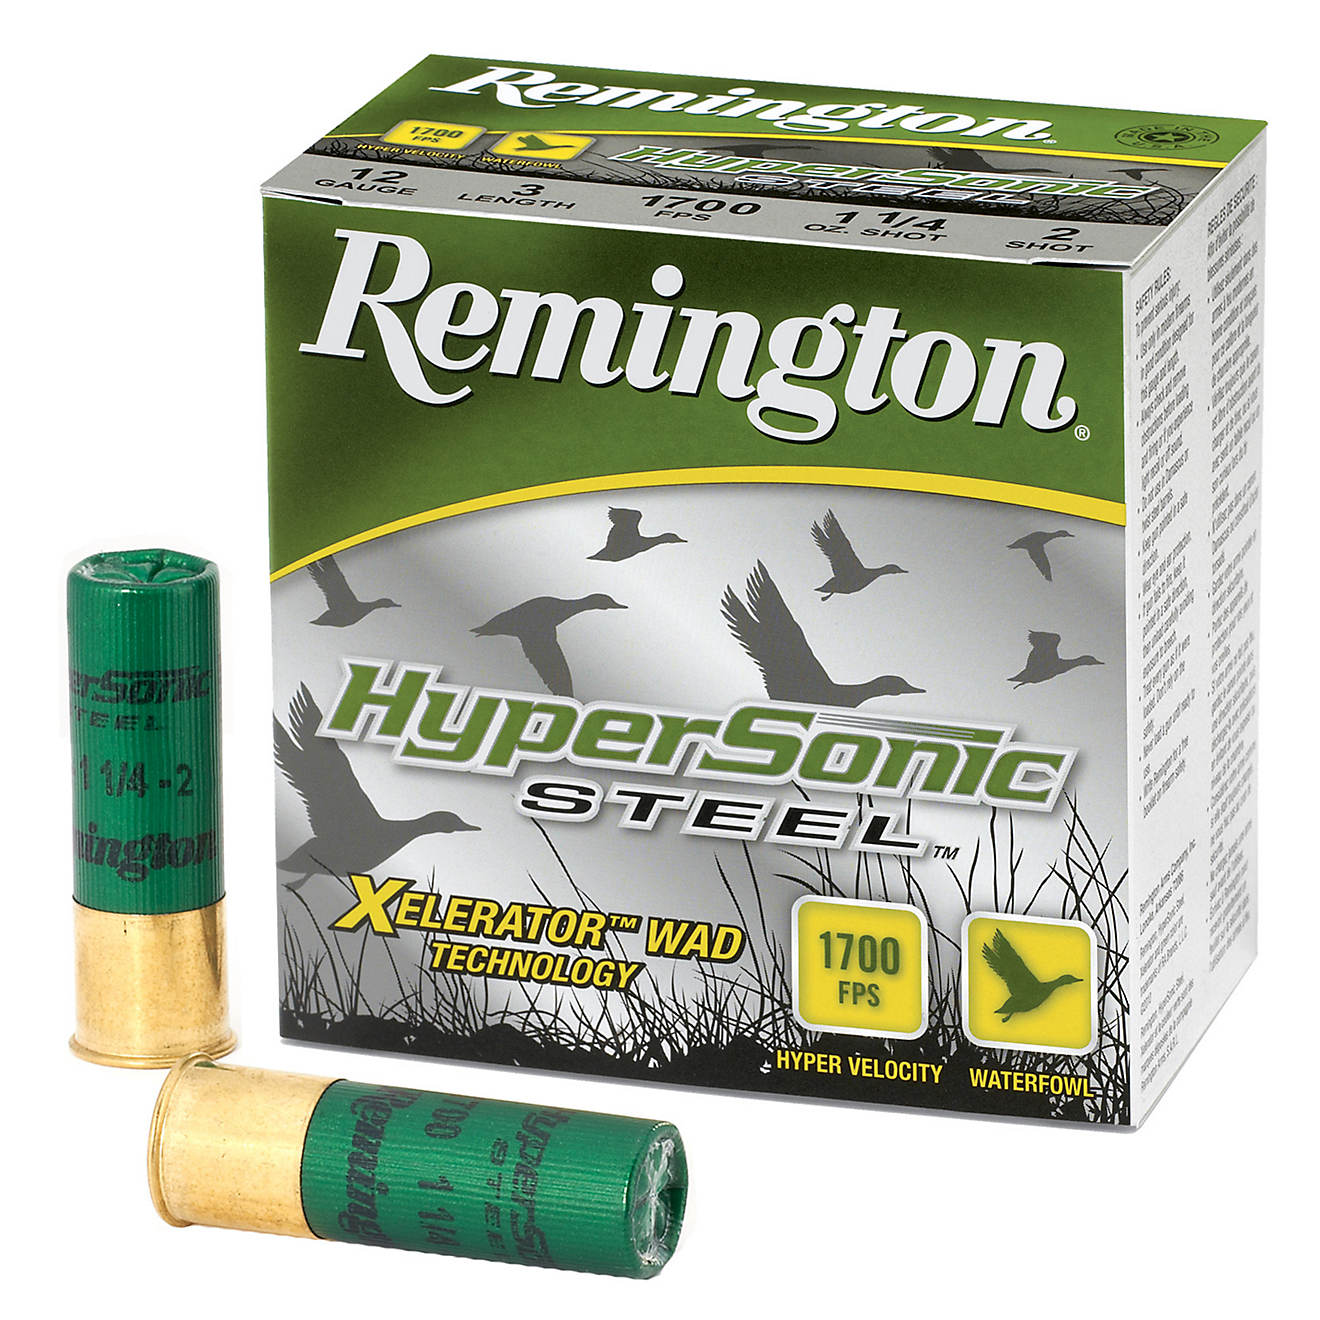 500rds of Remington HyperSonic Steel 12 Gauge Shotshells